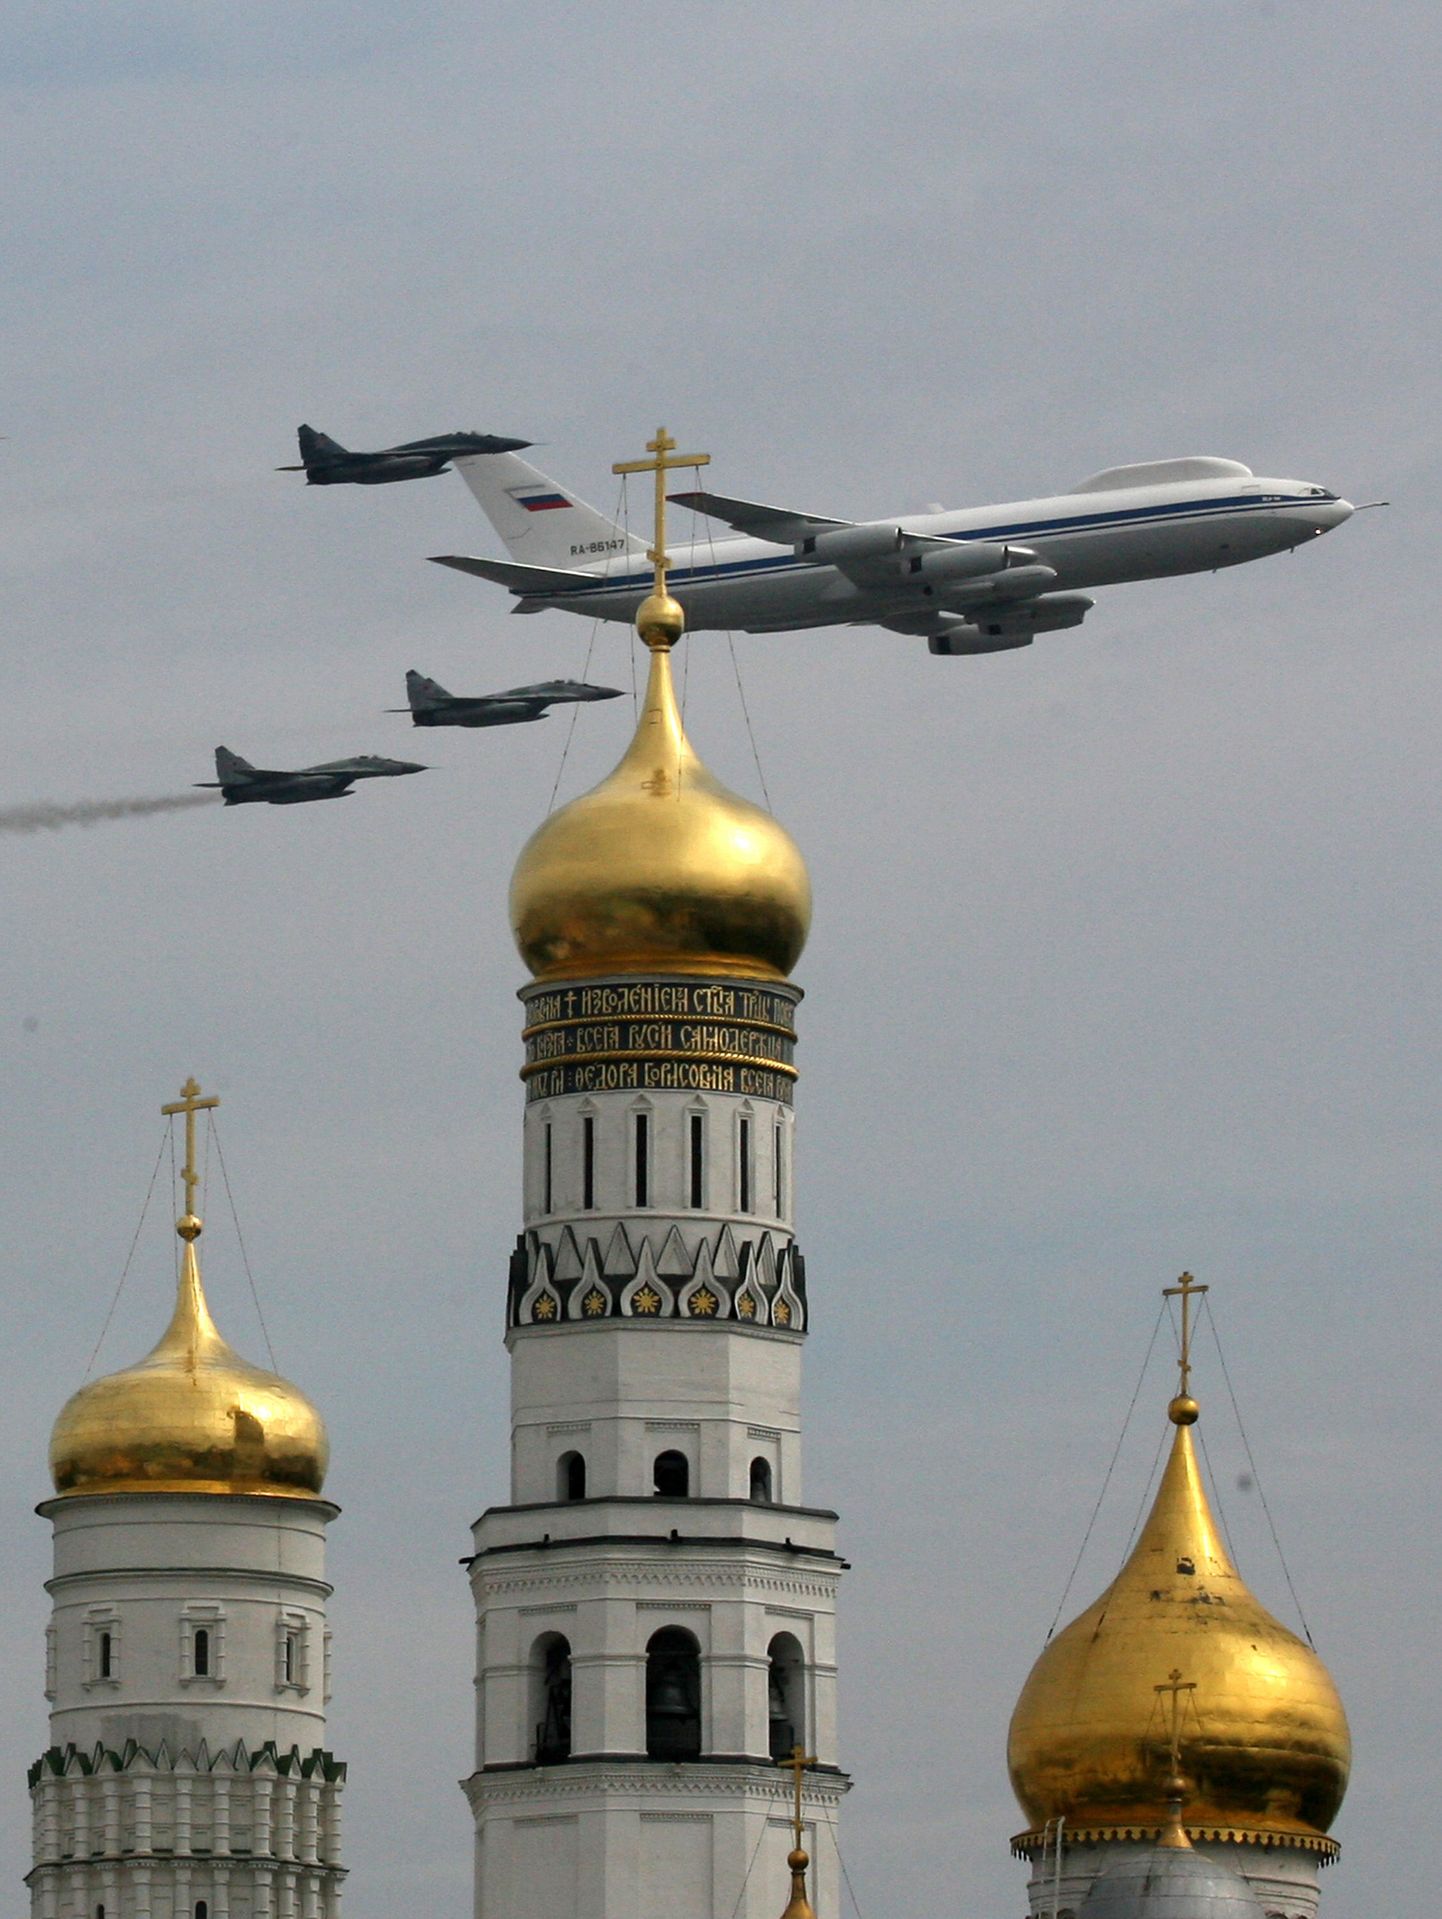 Venemaa õhujõudude suur probleem on koostöö puudumine eri lennukitüüpide ja väeliikide vahel, piirdudes tihti harvade õppuste ning paraadidega. Lendav komandopunkt Il-80 koos hävituslennukitega ülelennul Punasel väljakul toimunud võidupühaparaadist 2010. AFP